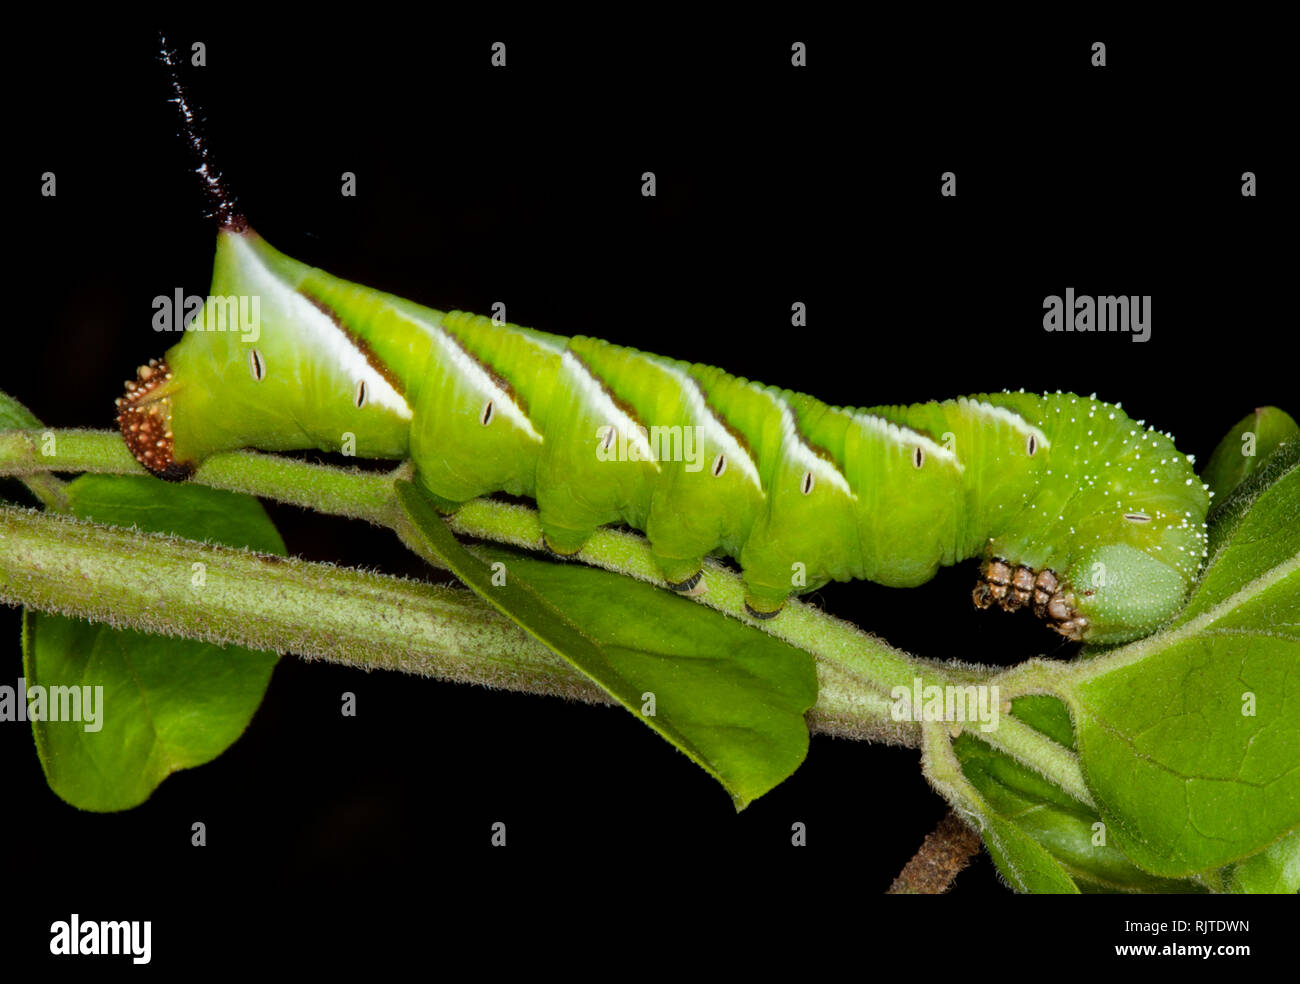 Lebhaftes grün-weiß gestreiften Caterpillar von Liguster Hawk Moth, Psilogramma casuarinae auf Blatt gegen den dunklen Hintergrund in der Australischen Garten Stockfoto